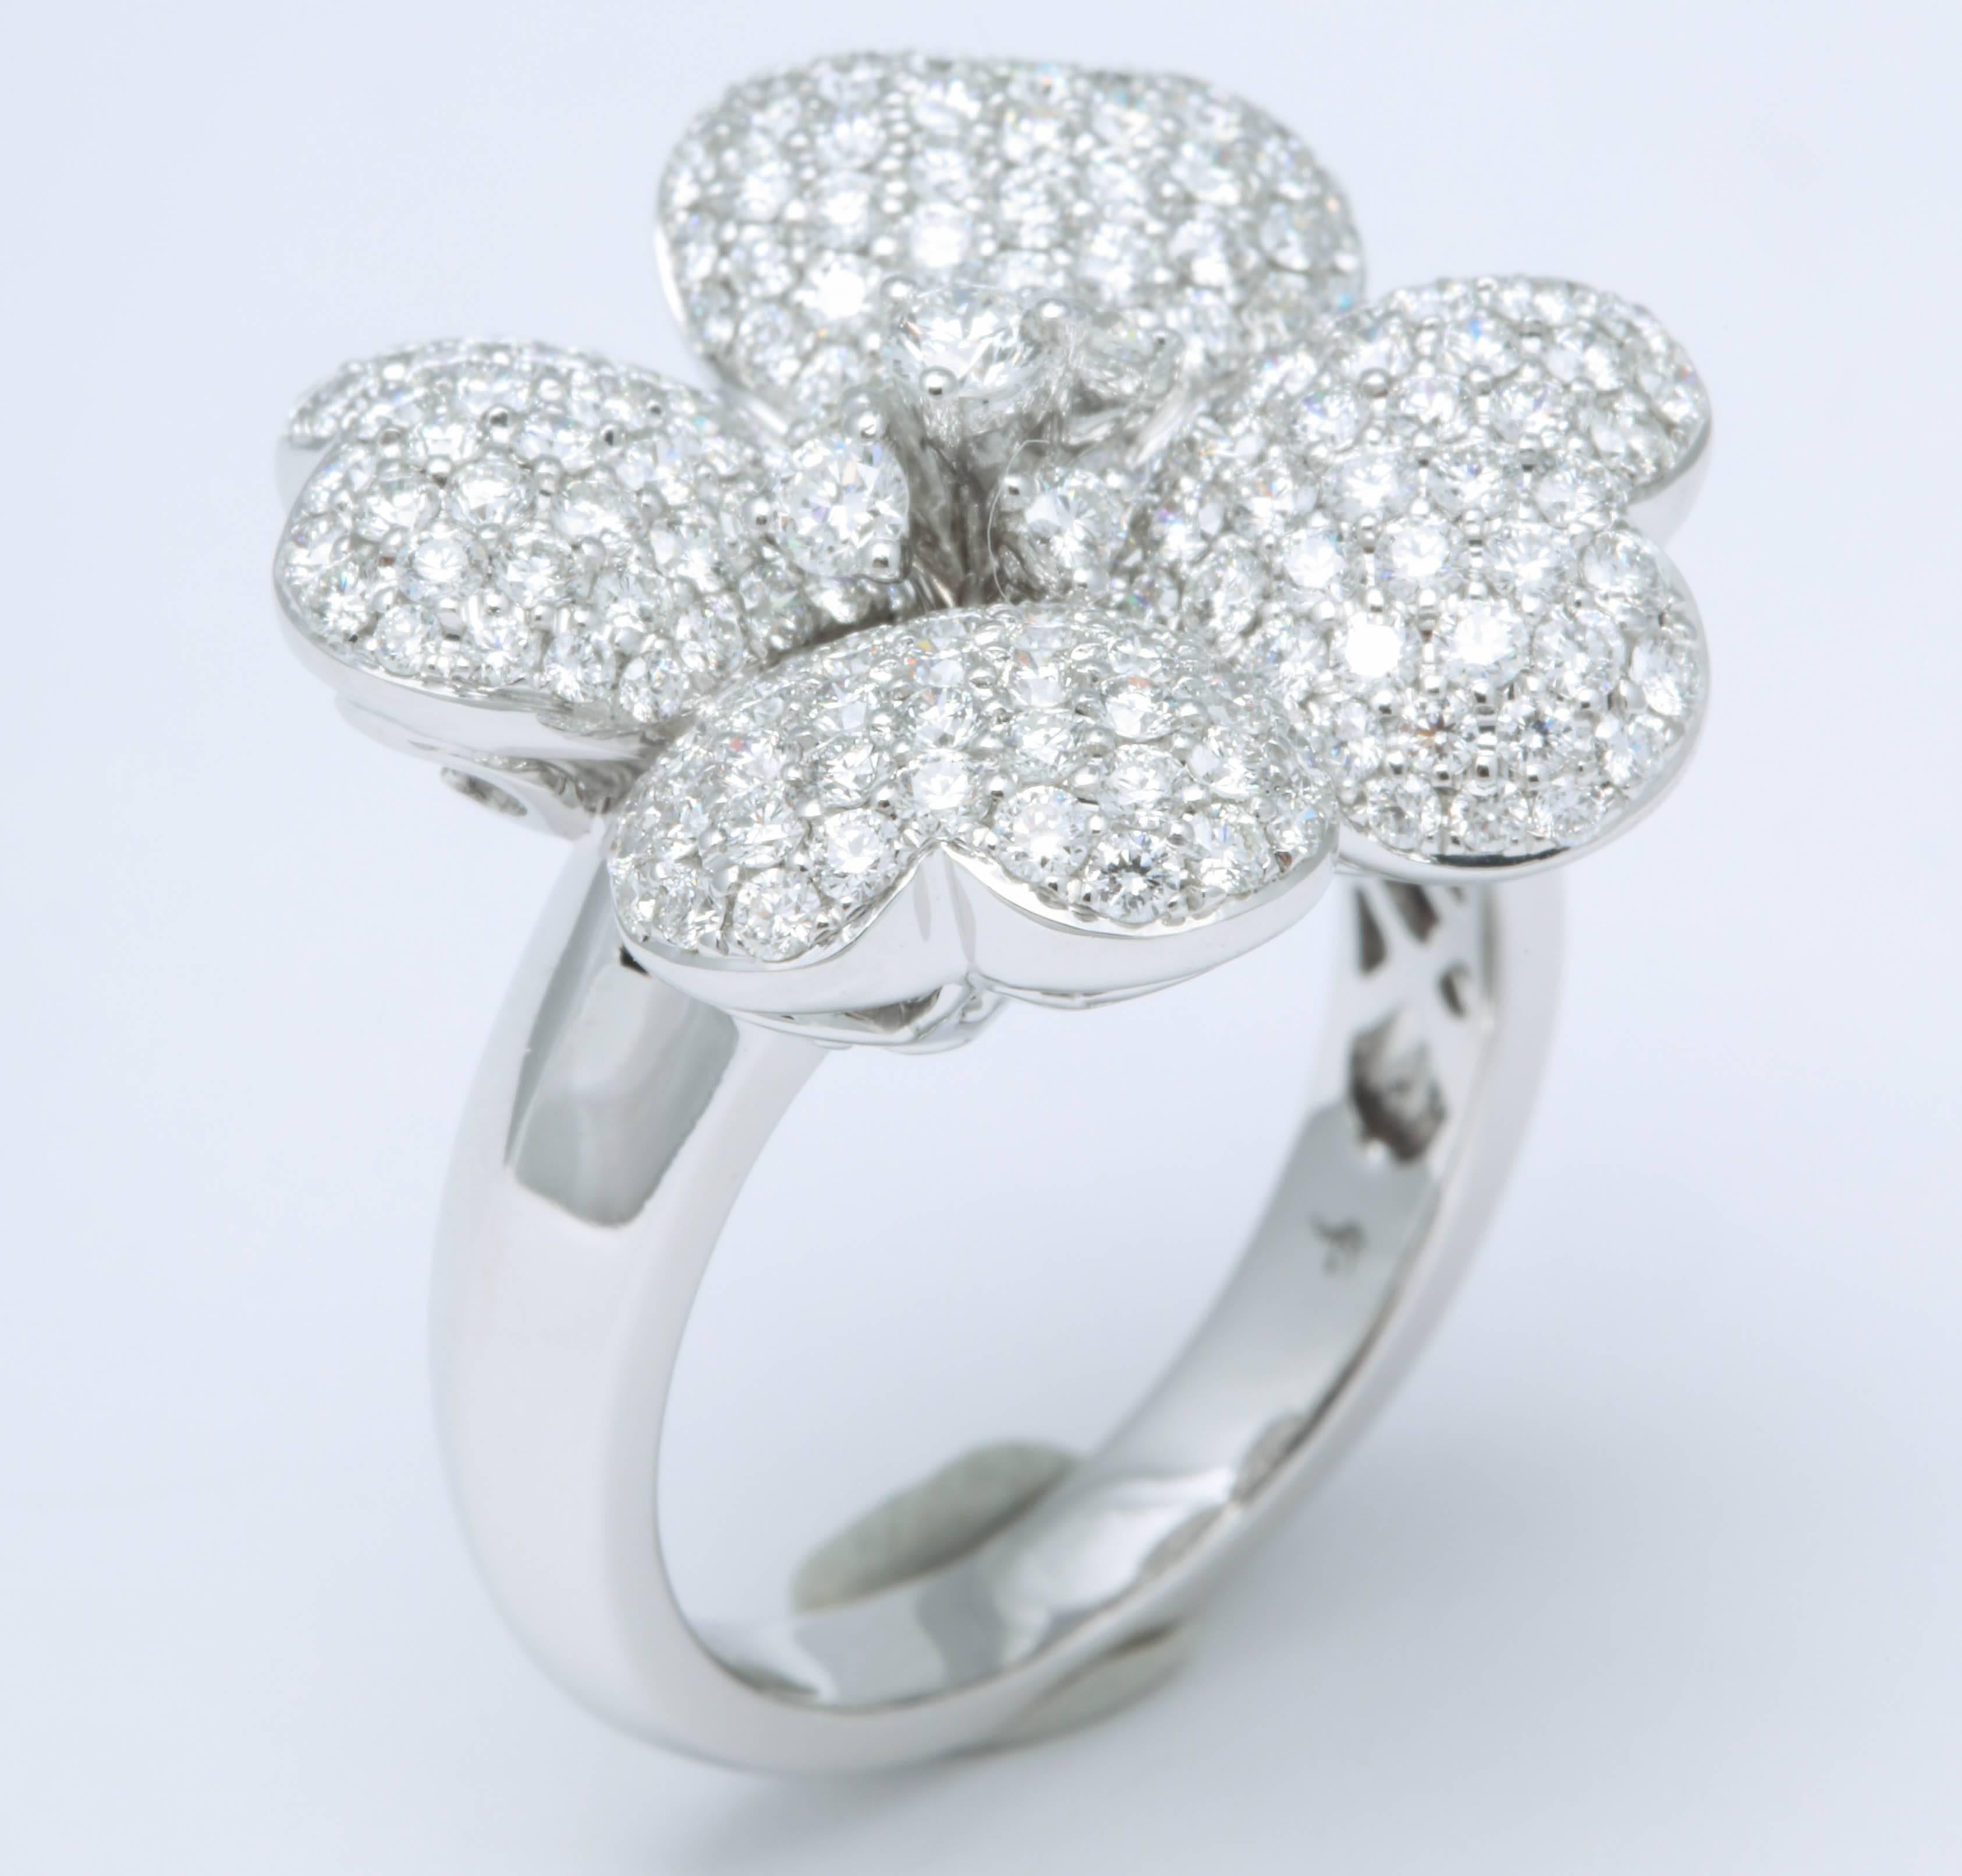 
Tant d'étincelles dans un magnifique motif de fleur emblématique.

2.15 carats de diamants ronds de taille brillant VS de couleur F, sertis dans de l'or blanc 18k. 

Actuellement, il s'agit d'une taille 6.5 mais elle peut être adaptée à n'importe